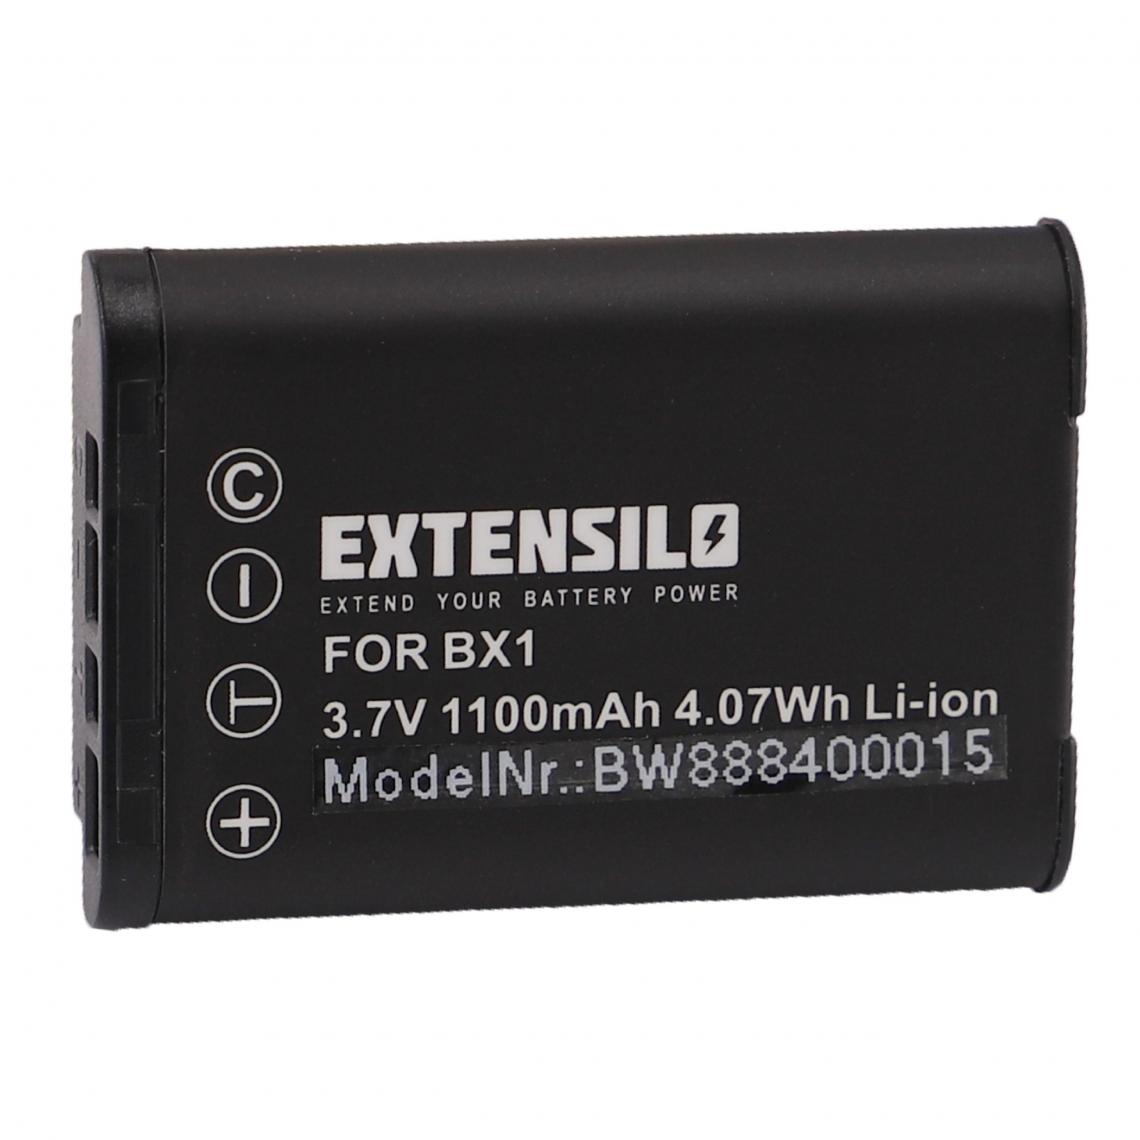 Vhbw - EXTENSILO Batterie compatible avec Sony Camcorder HDR-GW66, HDR-AS30V/B HD Flash Action Cam appareil photo, reflex numérique (1100mAh, 3,7V, Li-ion) - Batterie Photo & Video